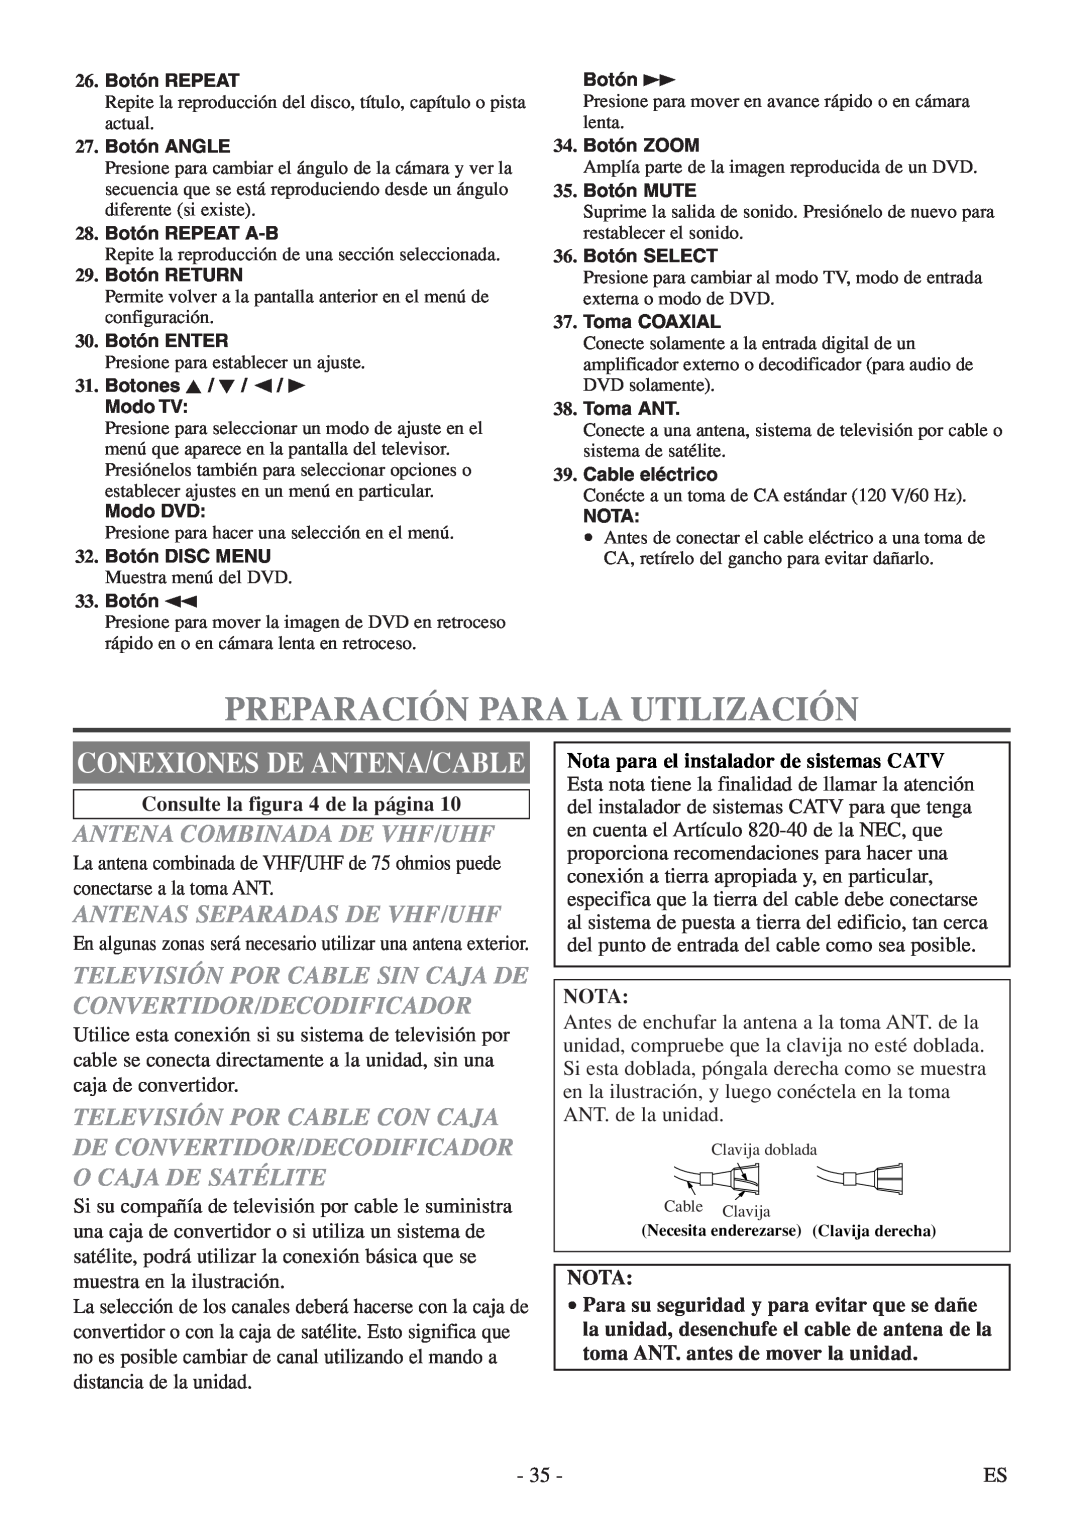 FUNAI MSD520FF owner manual Preparación Para La Utilización, Conexiones De Antena/Cable, Antena Combinada De Vhf/Uhf, Nota 